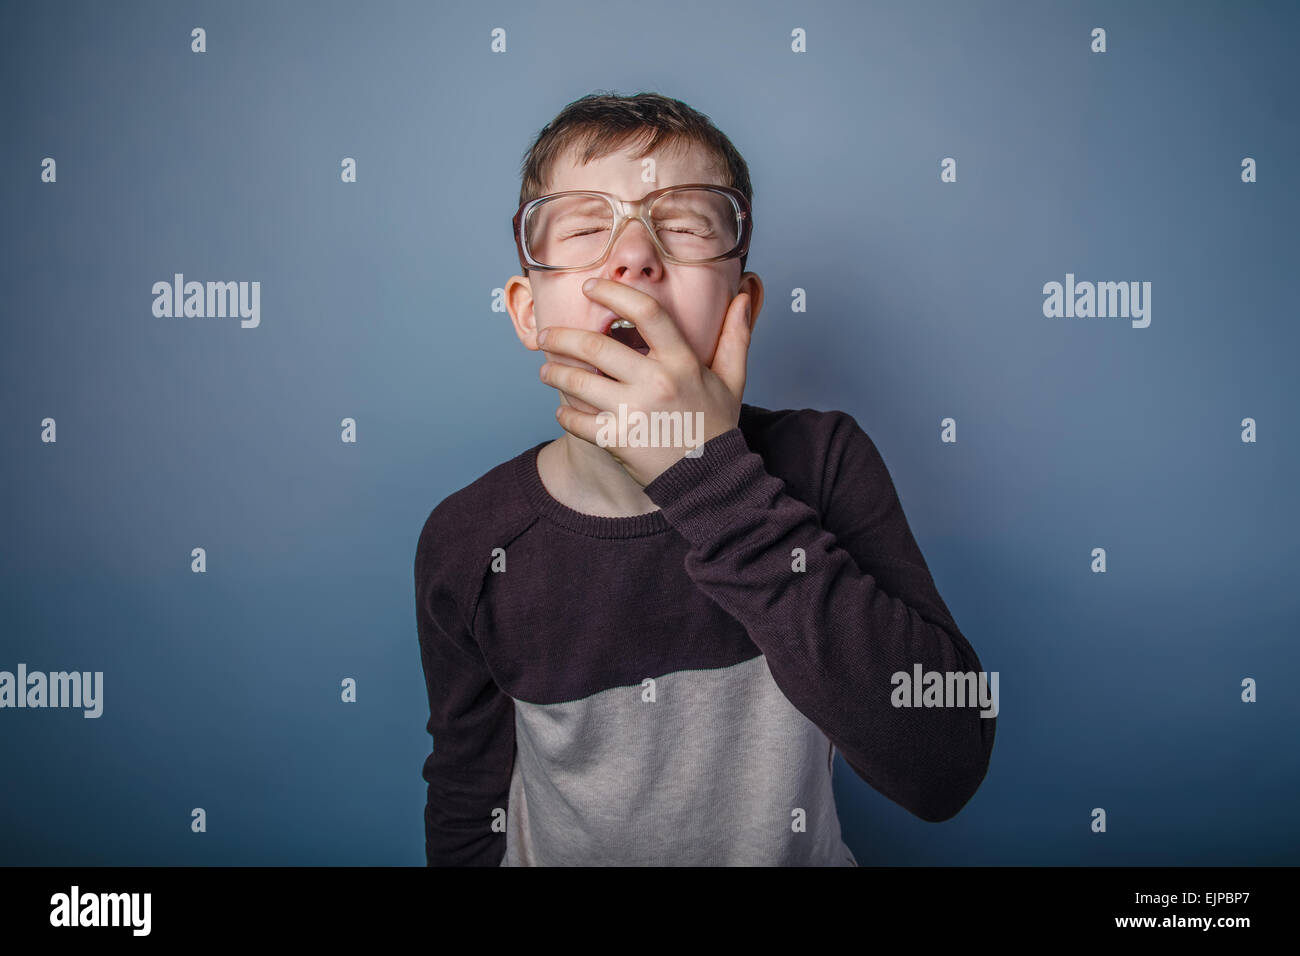 Teenager Boy der Europäischen Aussehen mit Brille deckt ihre mout Stockfoto